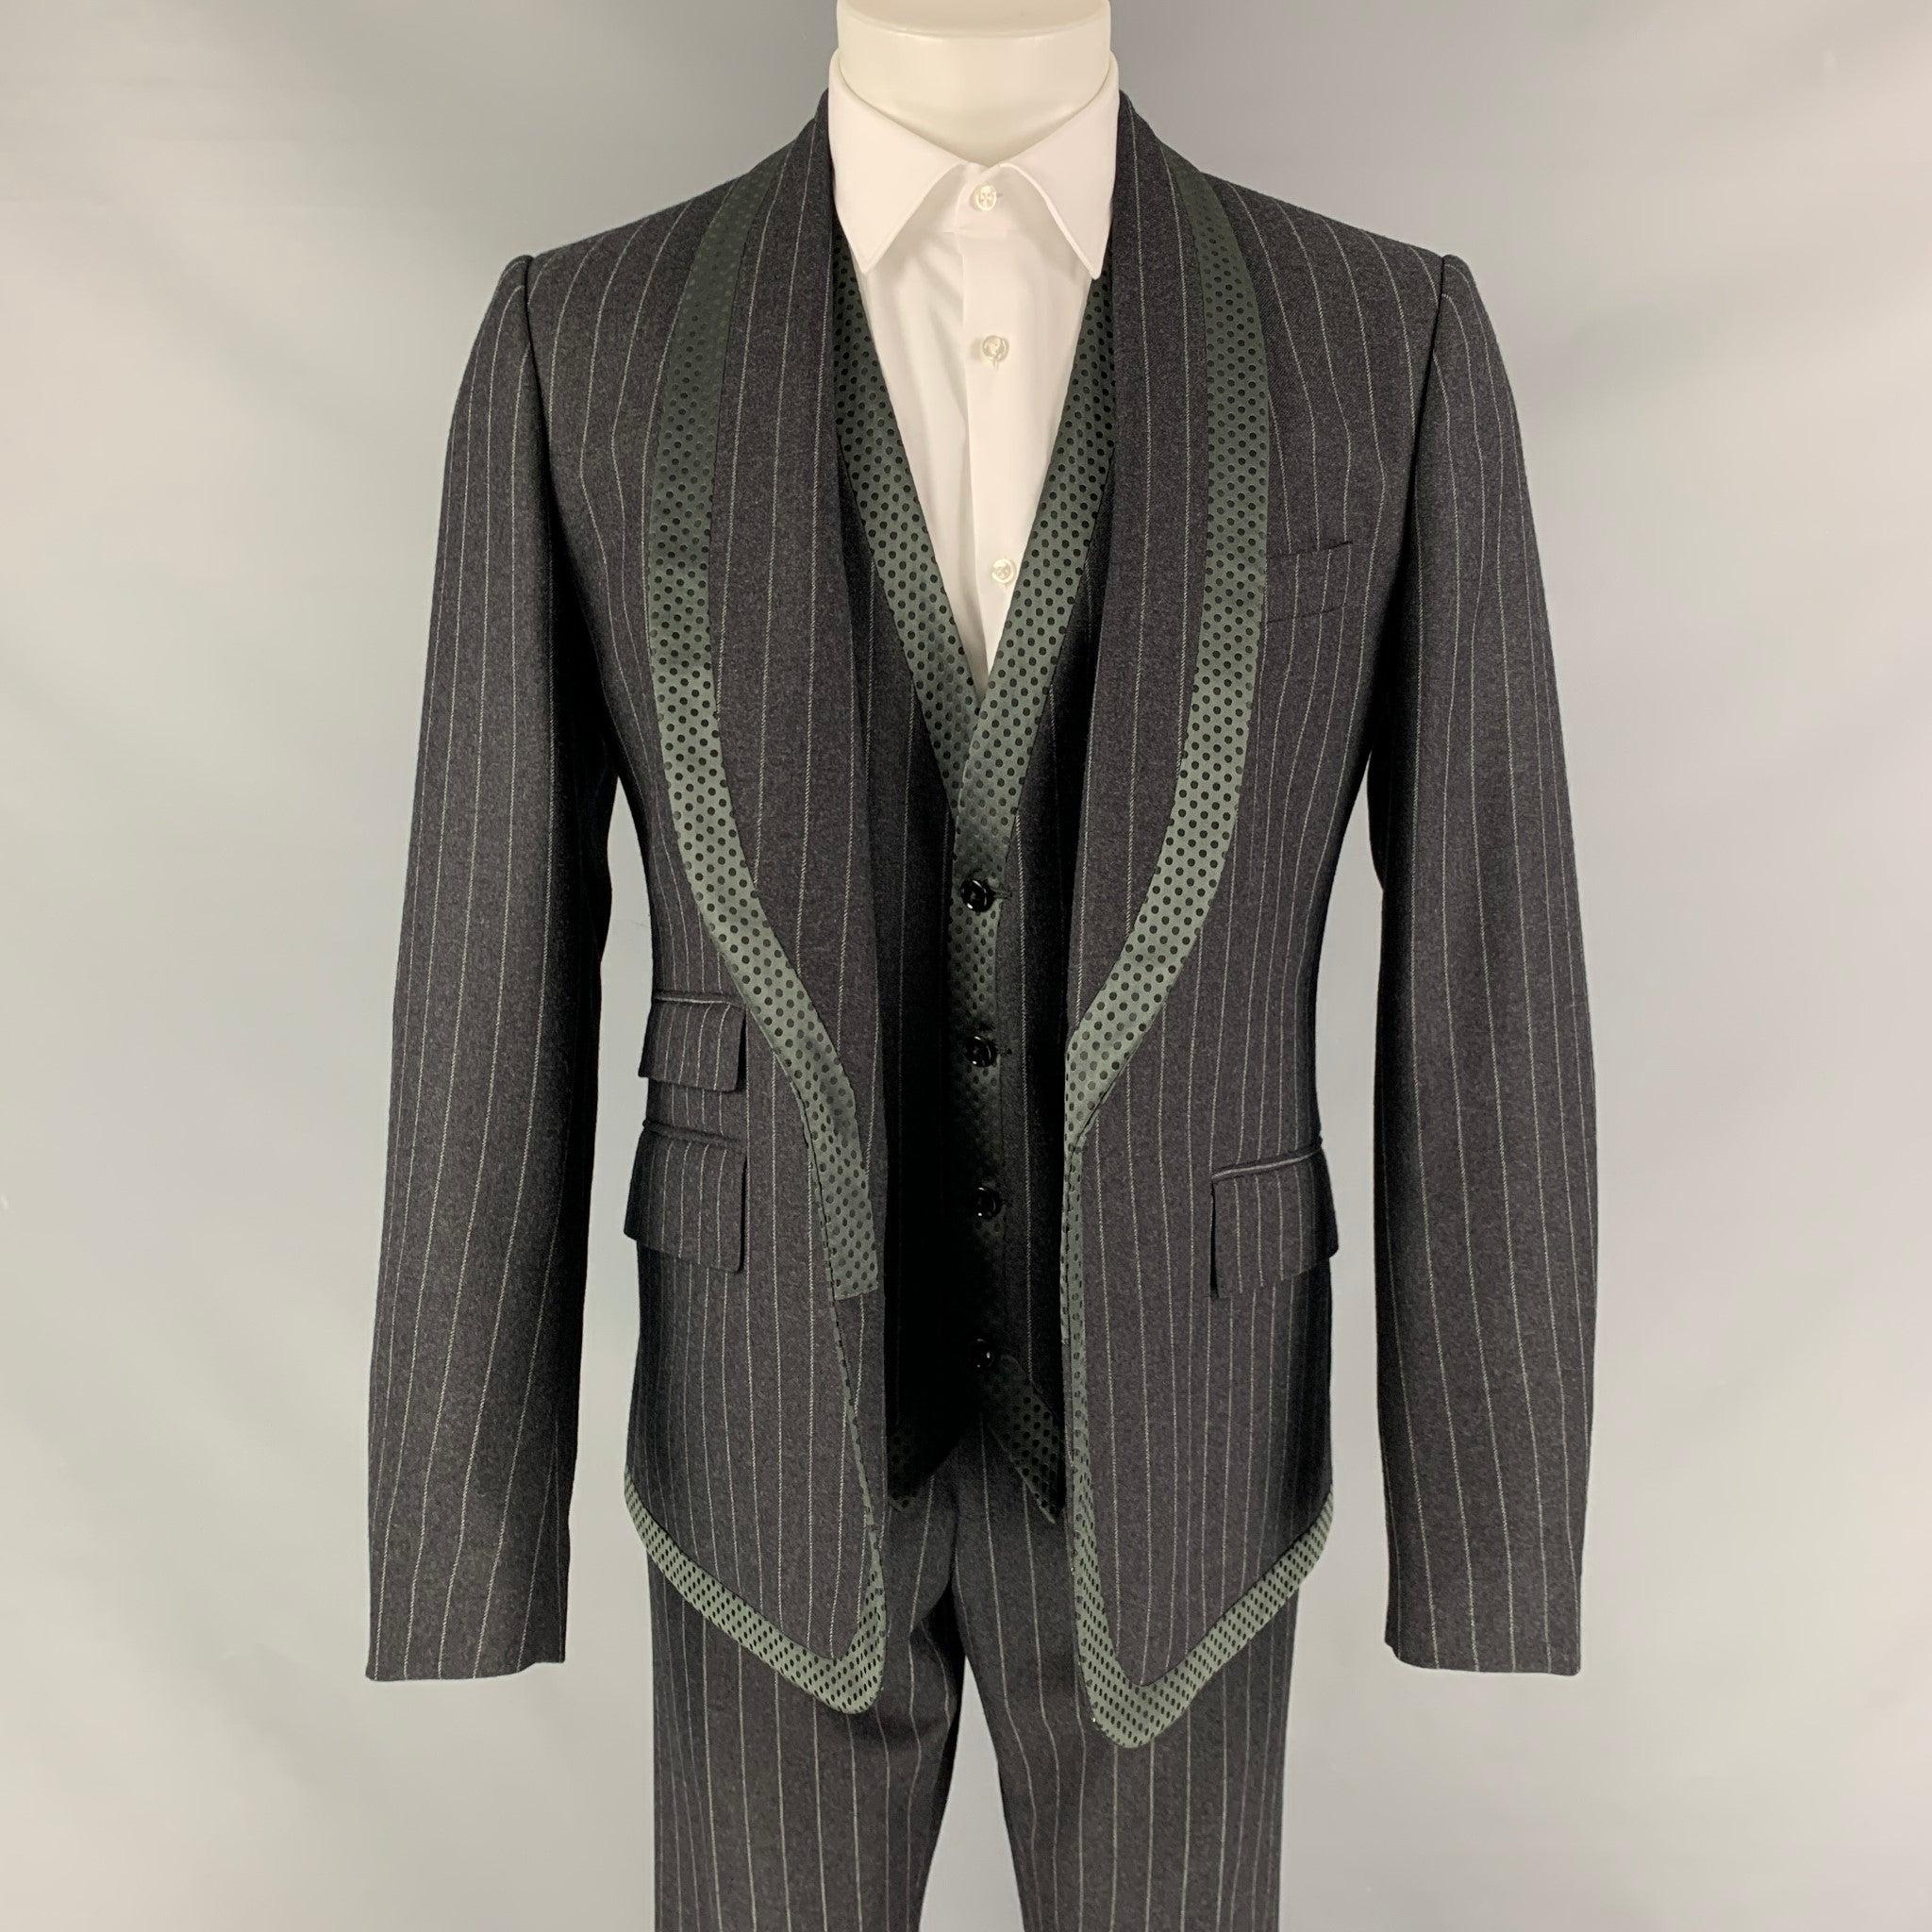 DOLCE & GABBANA 3 Stück
Der Anzug ist aus grauer Schurwolle mit Kreidestreifen und einem Innenfutter gefertigt und besteht aus einem einreihigen Sportmantel mit Schalkragen, einer passenden Weste und einer Hose mit flacher Front. Taille und Länge